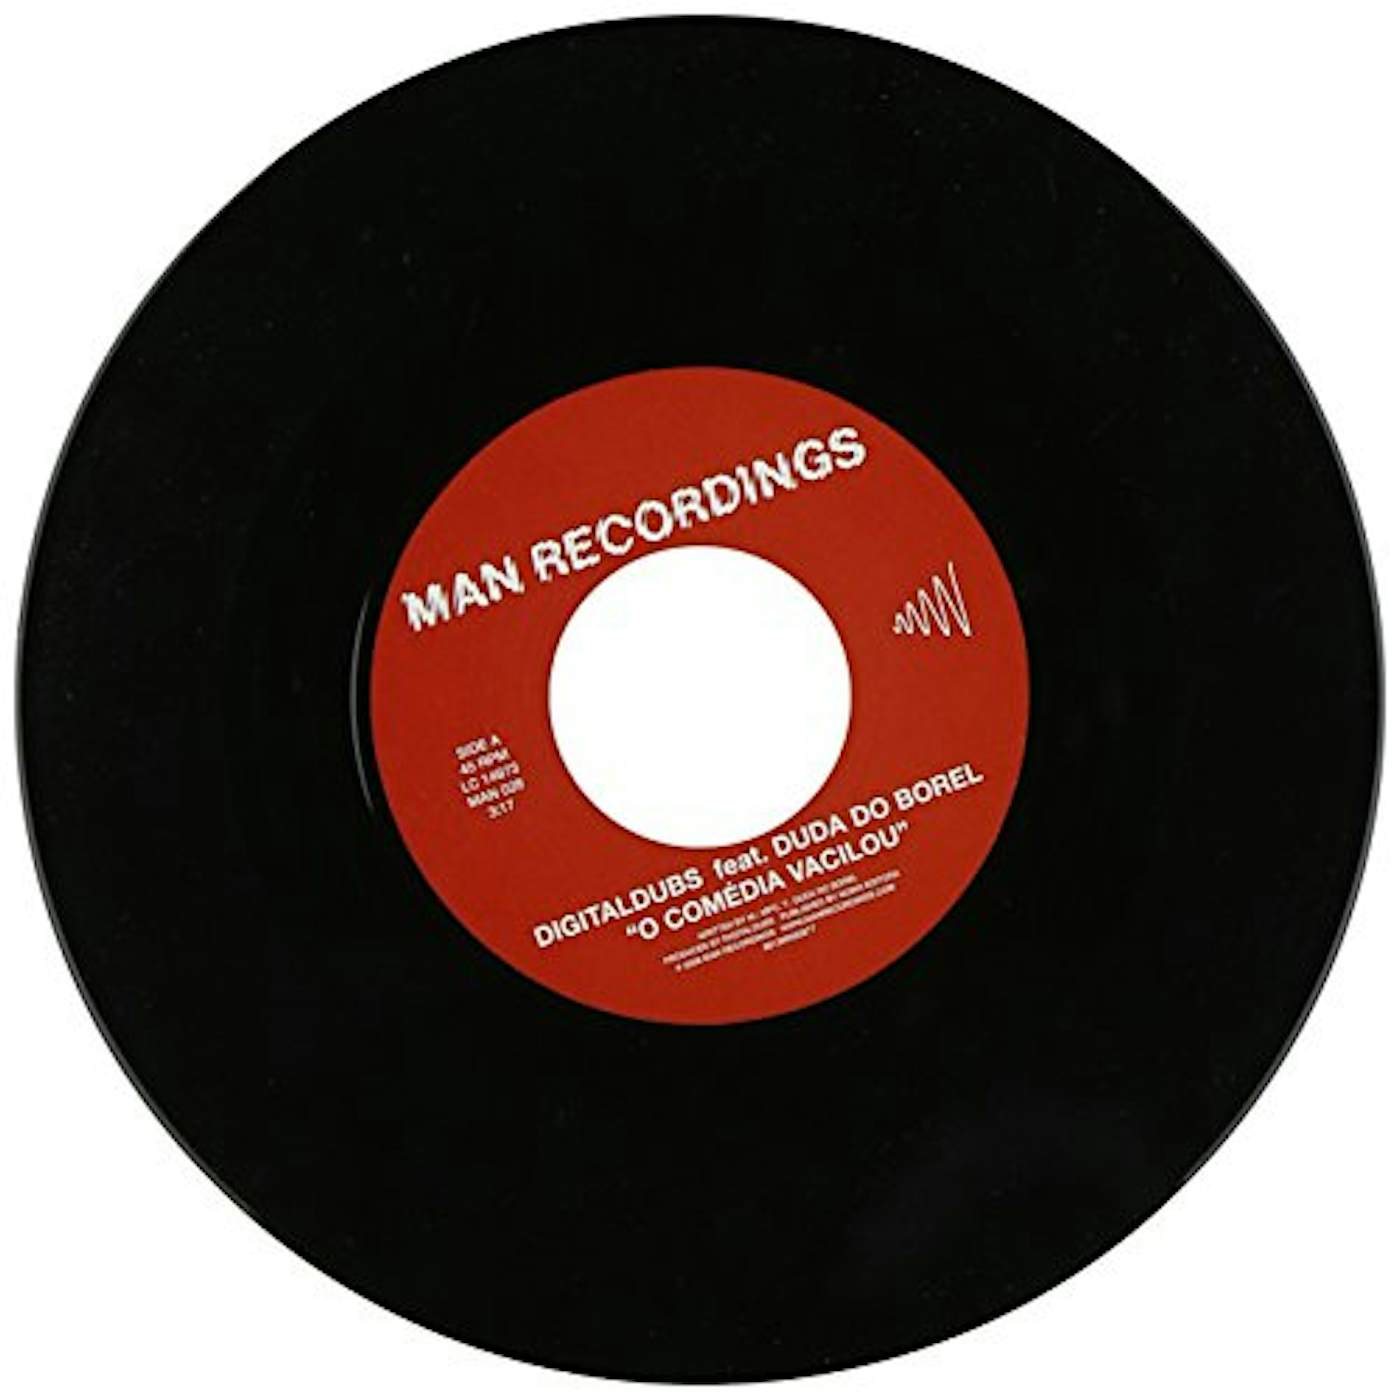 Digitaldubs O COMEDIA VACILOU Vinyl Record